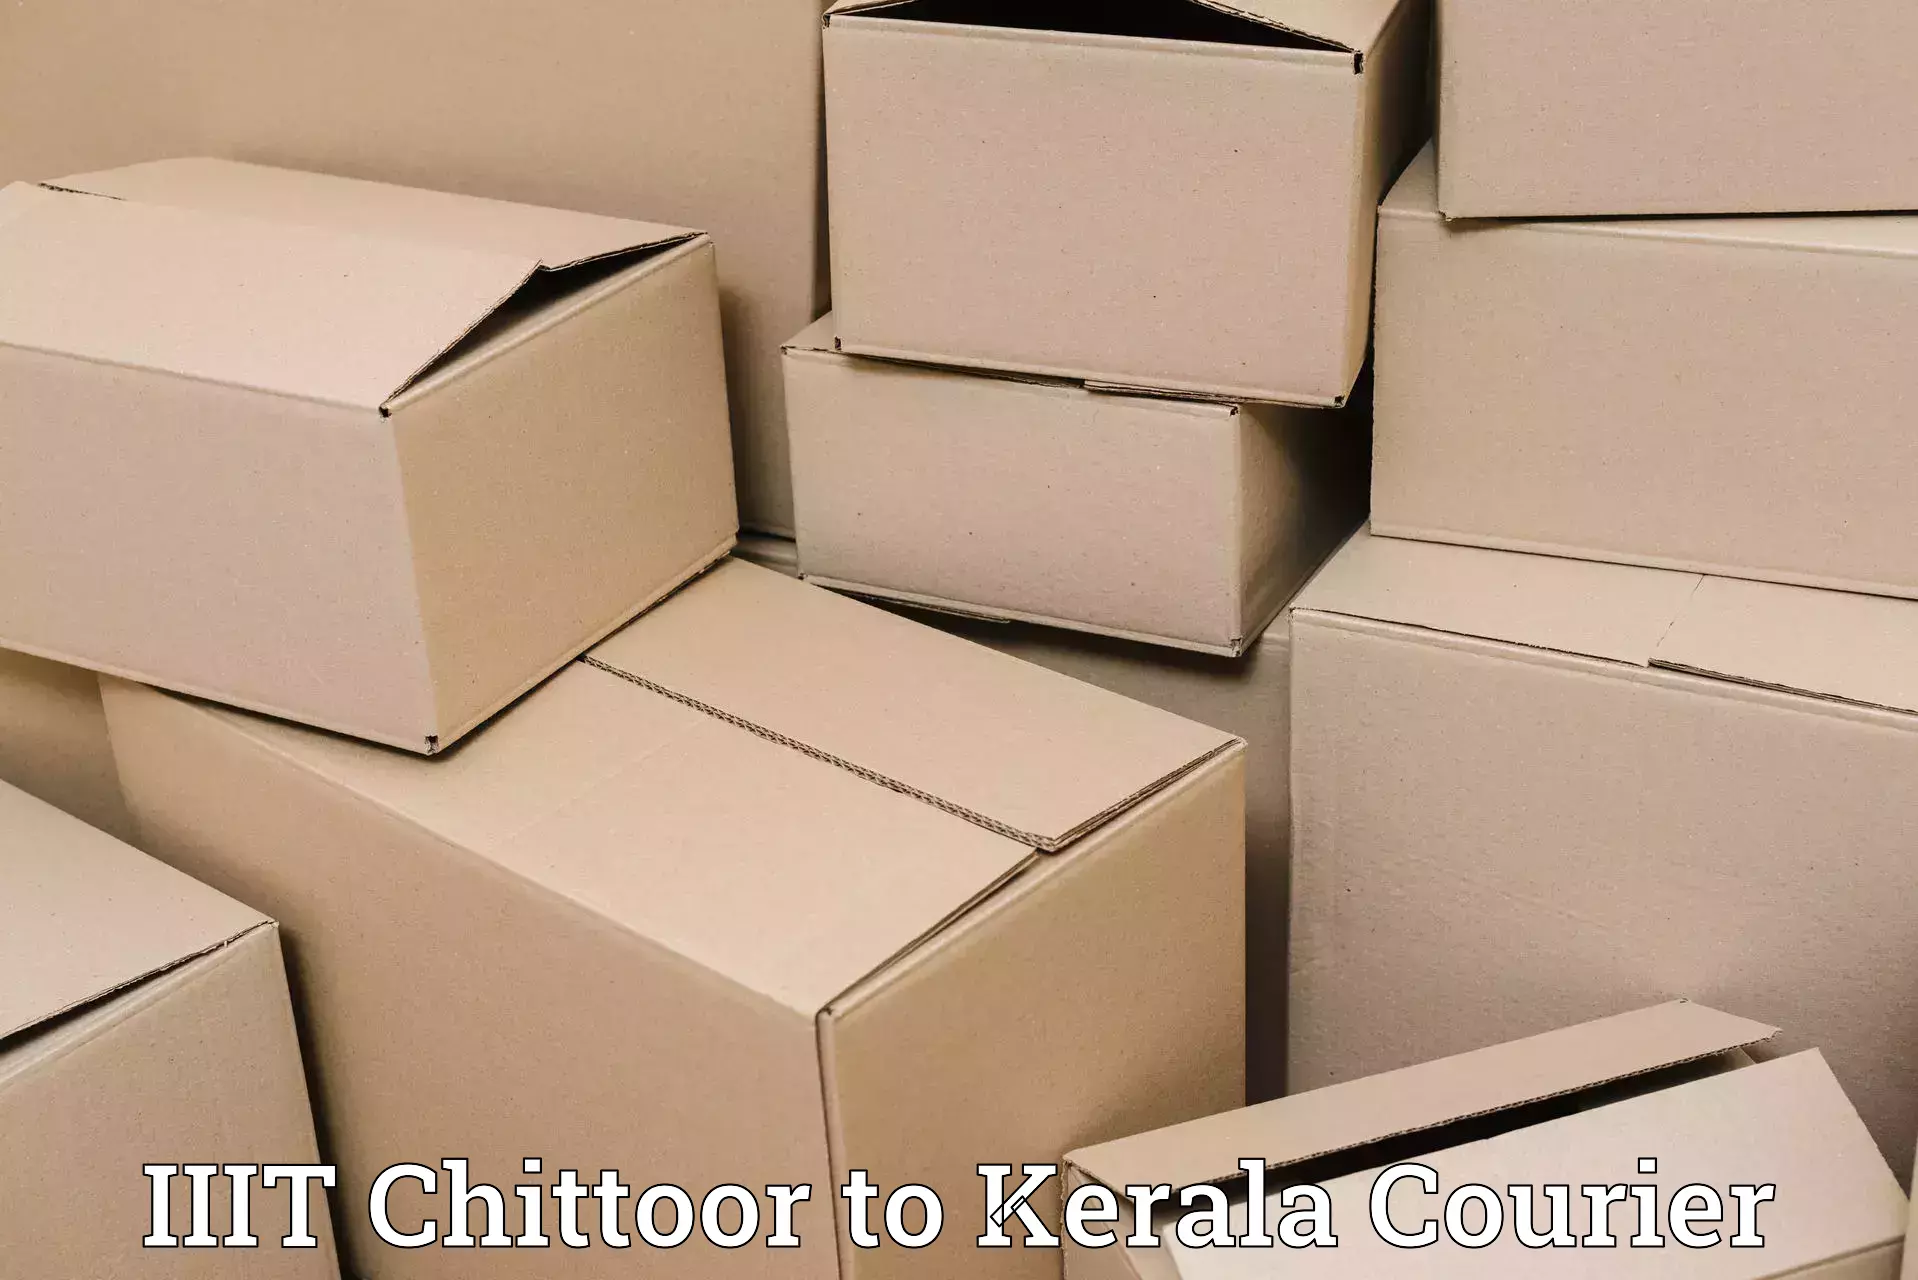 24-hour courier service IIIT Chittoor to Parakkadavu